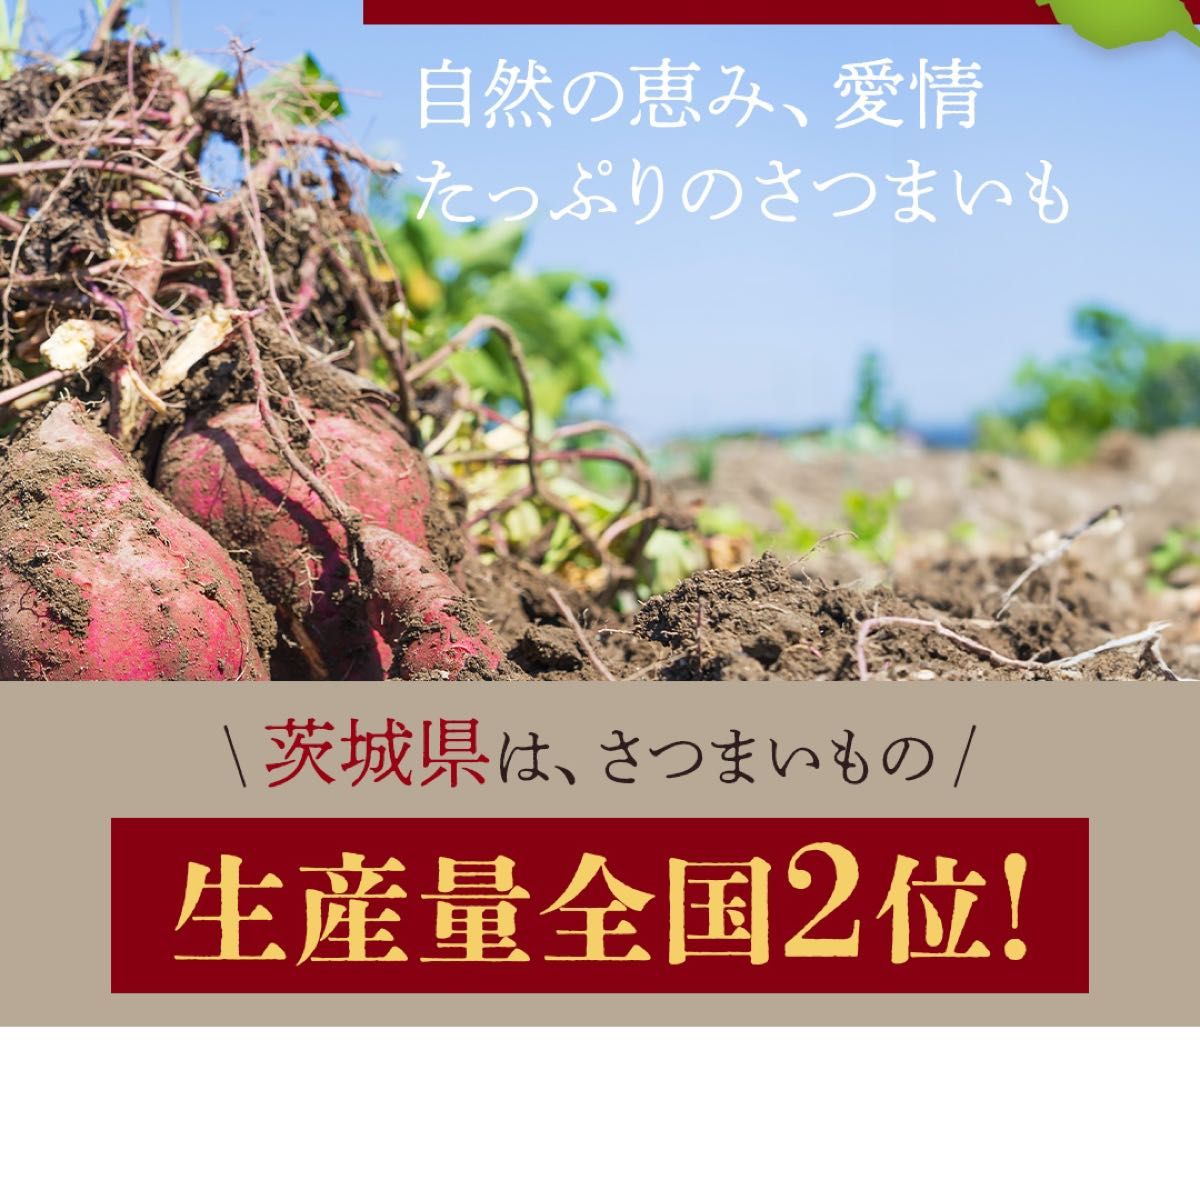 【干し芋プレゼント実施中】2kg 石焼き芋 熟成紅はるか使用 茨城県産 送料無料 干し芋 ダイエット